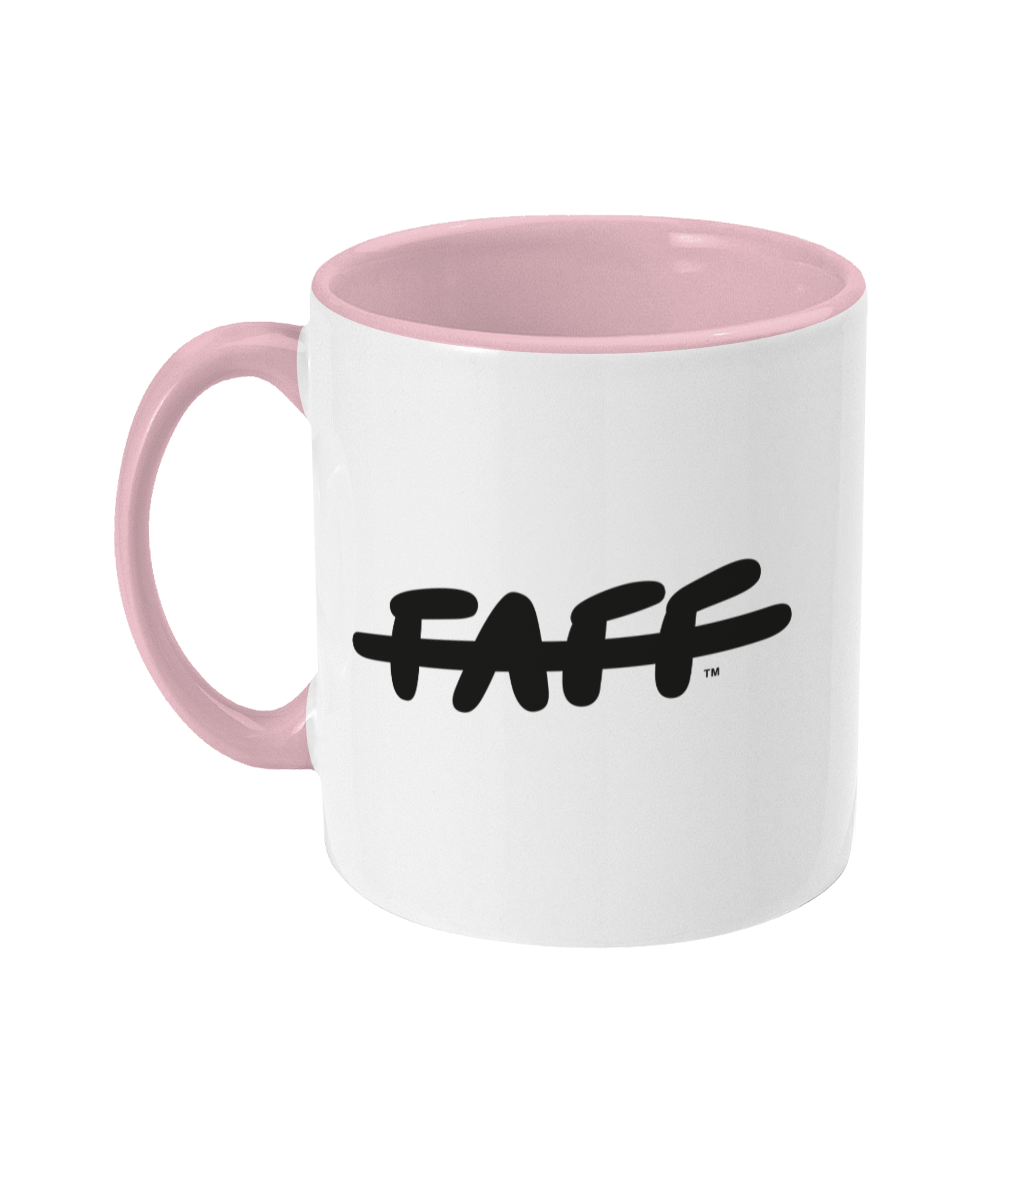 FAFF Mug - MUM'S MUG